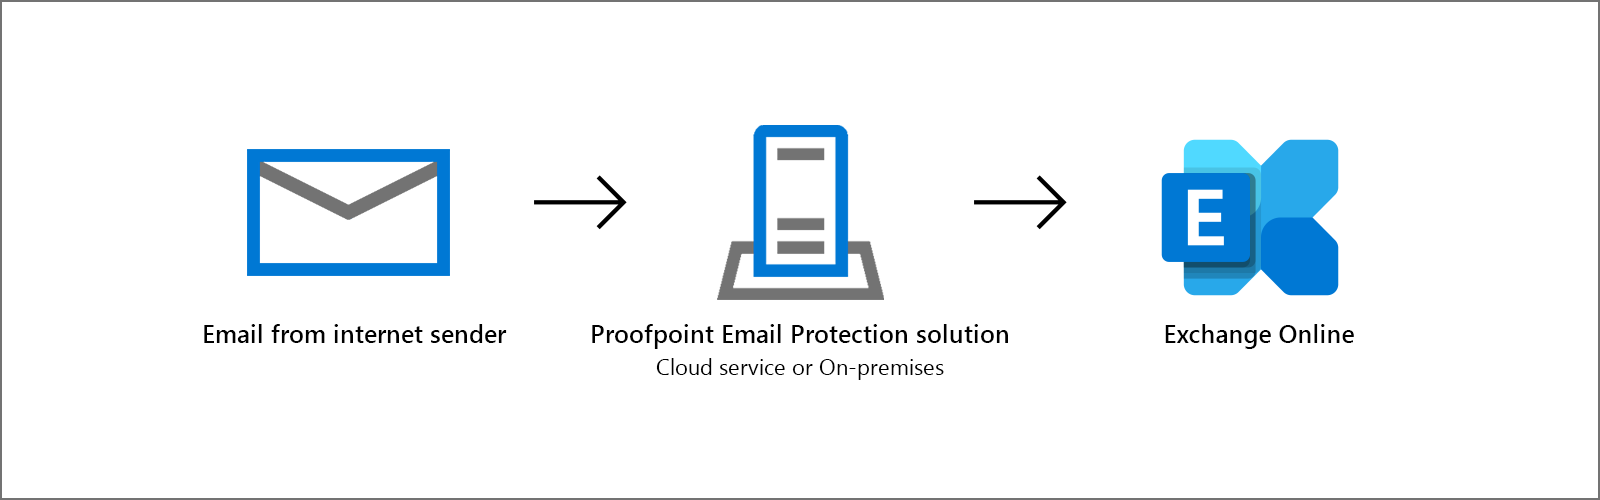 תצורה פופולרית לסינון דואר אלקטרוני באמצעות Proofpoint ו- Exchange Online.